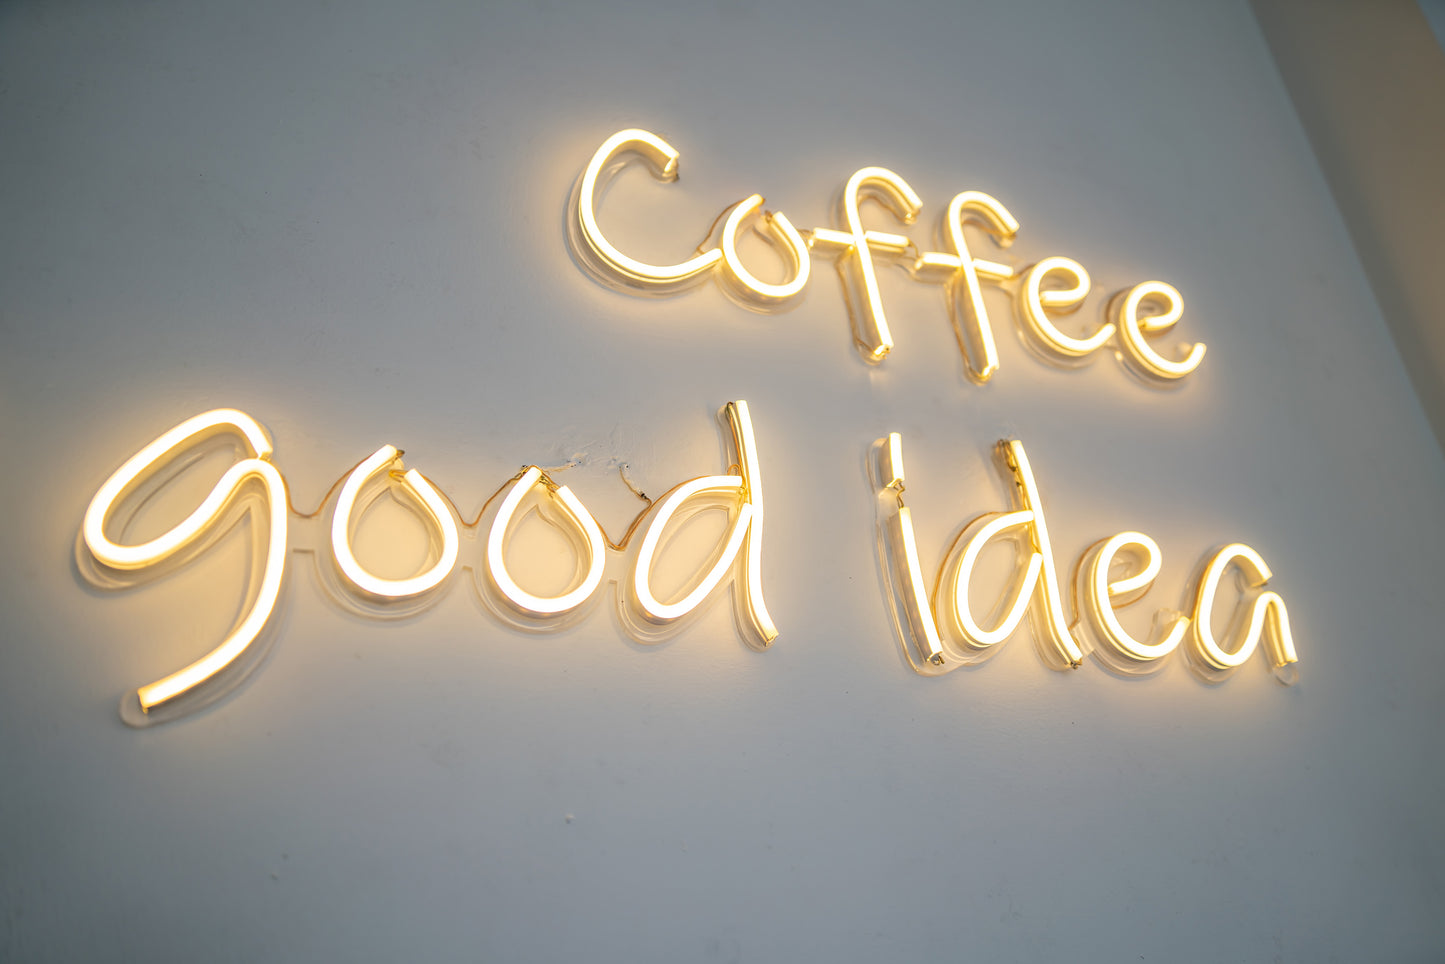 Coffee Good Idea LED